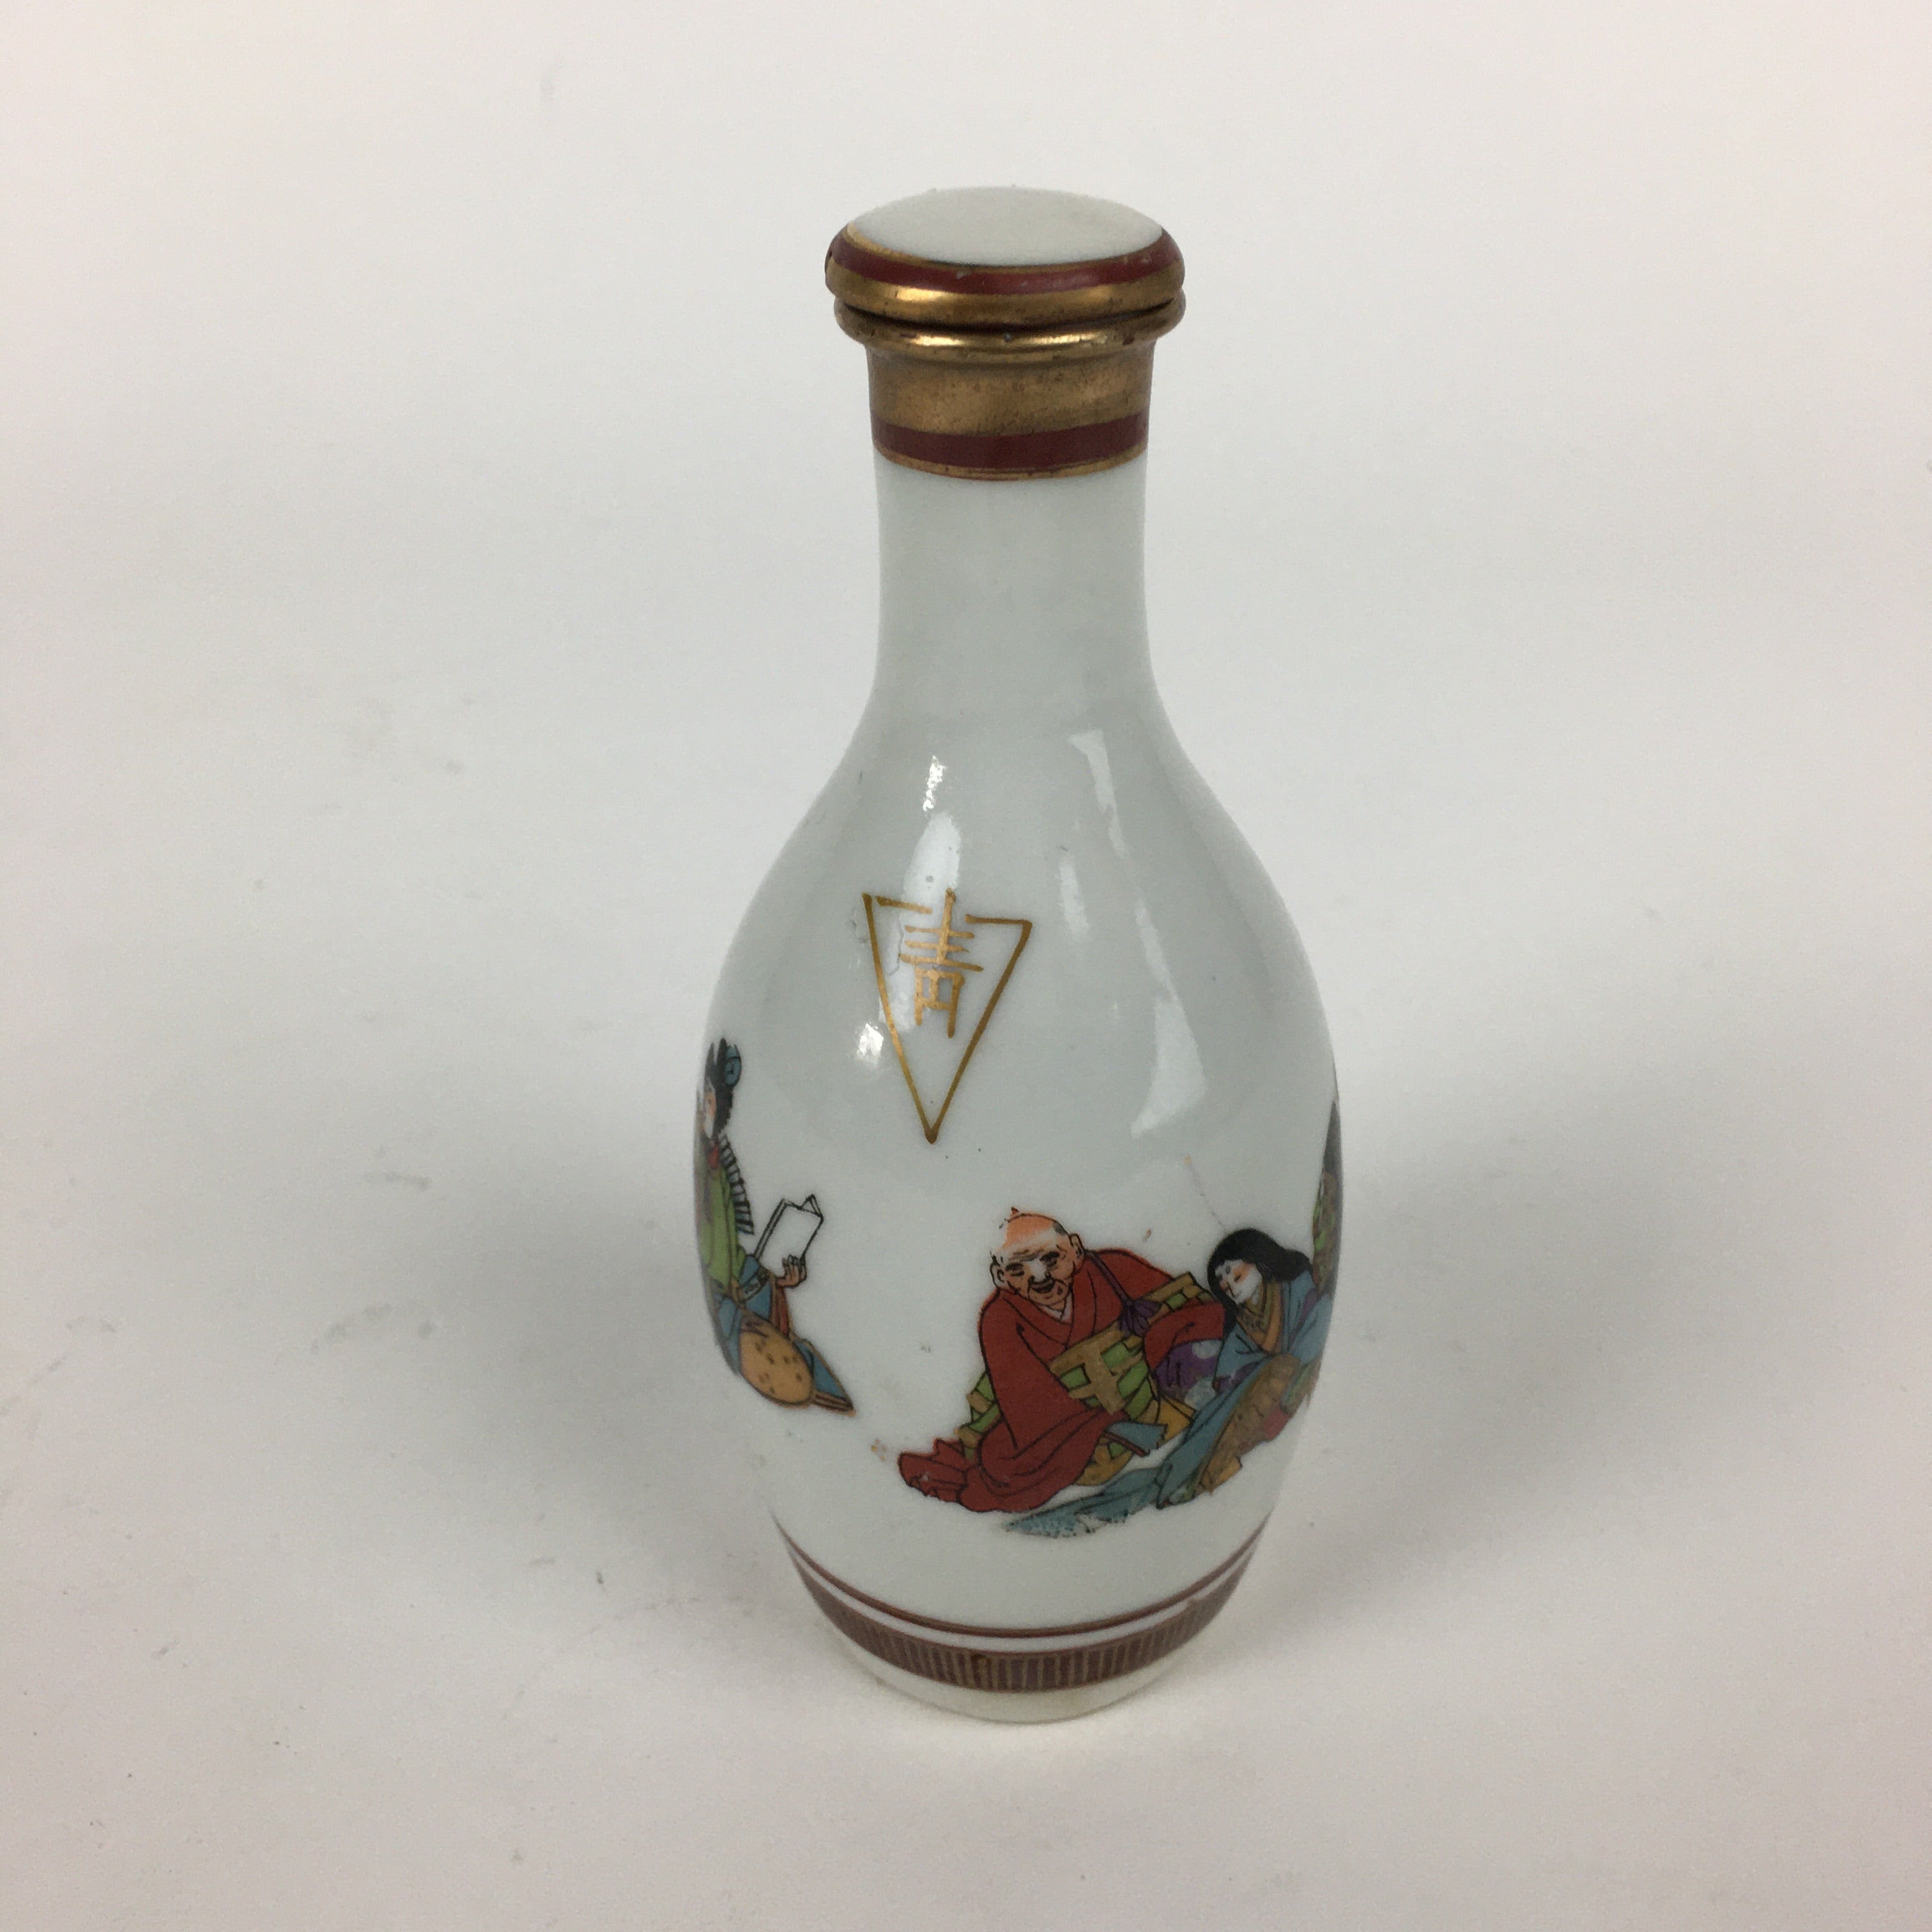 Japanese Porcelain Kutani Ware Sake Bottle Vtg Lidded Tokkuri Heian TS319